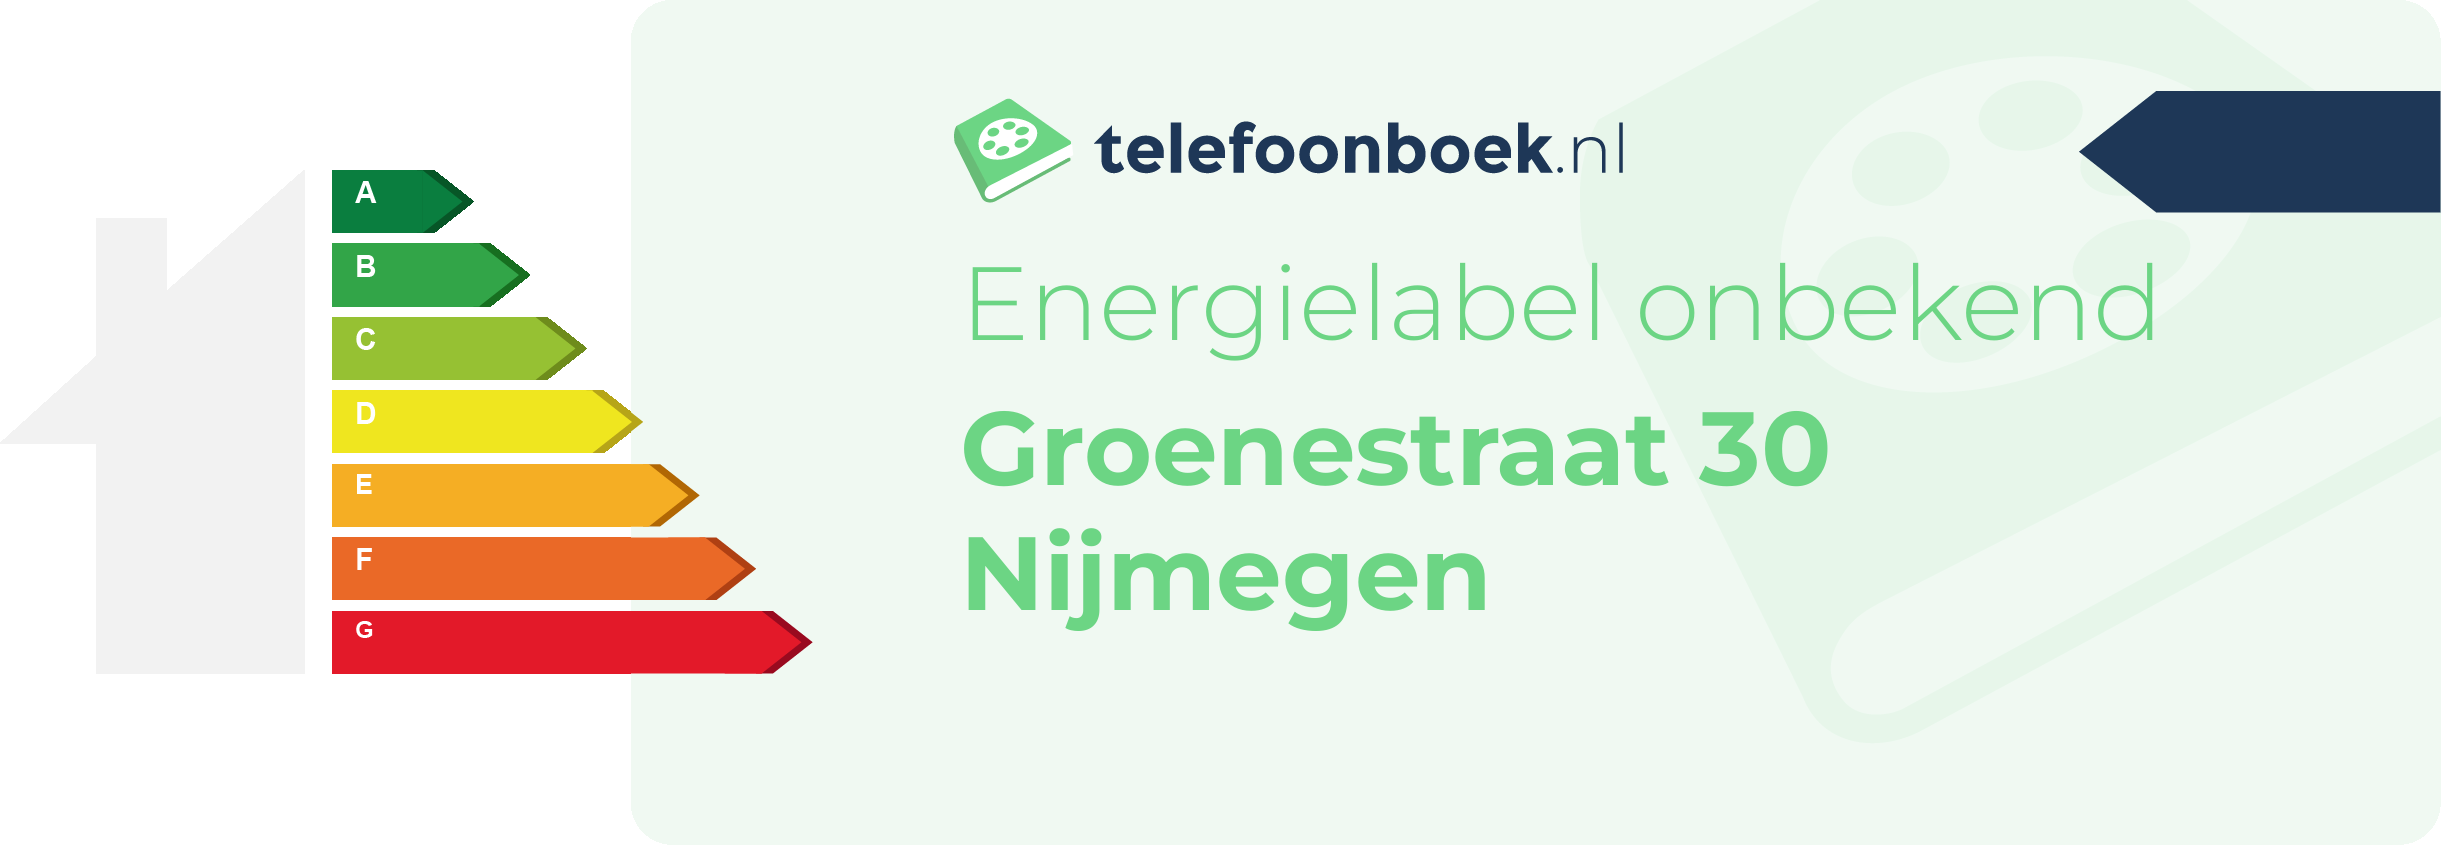 Energielabel Groenestraat 30 Nijmegen